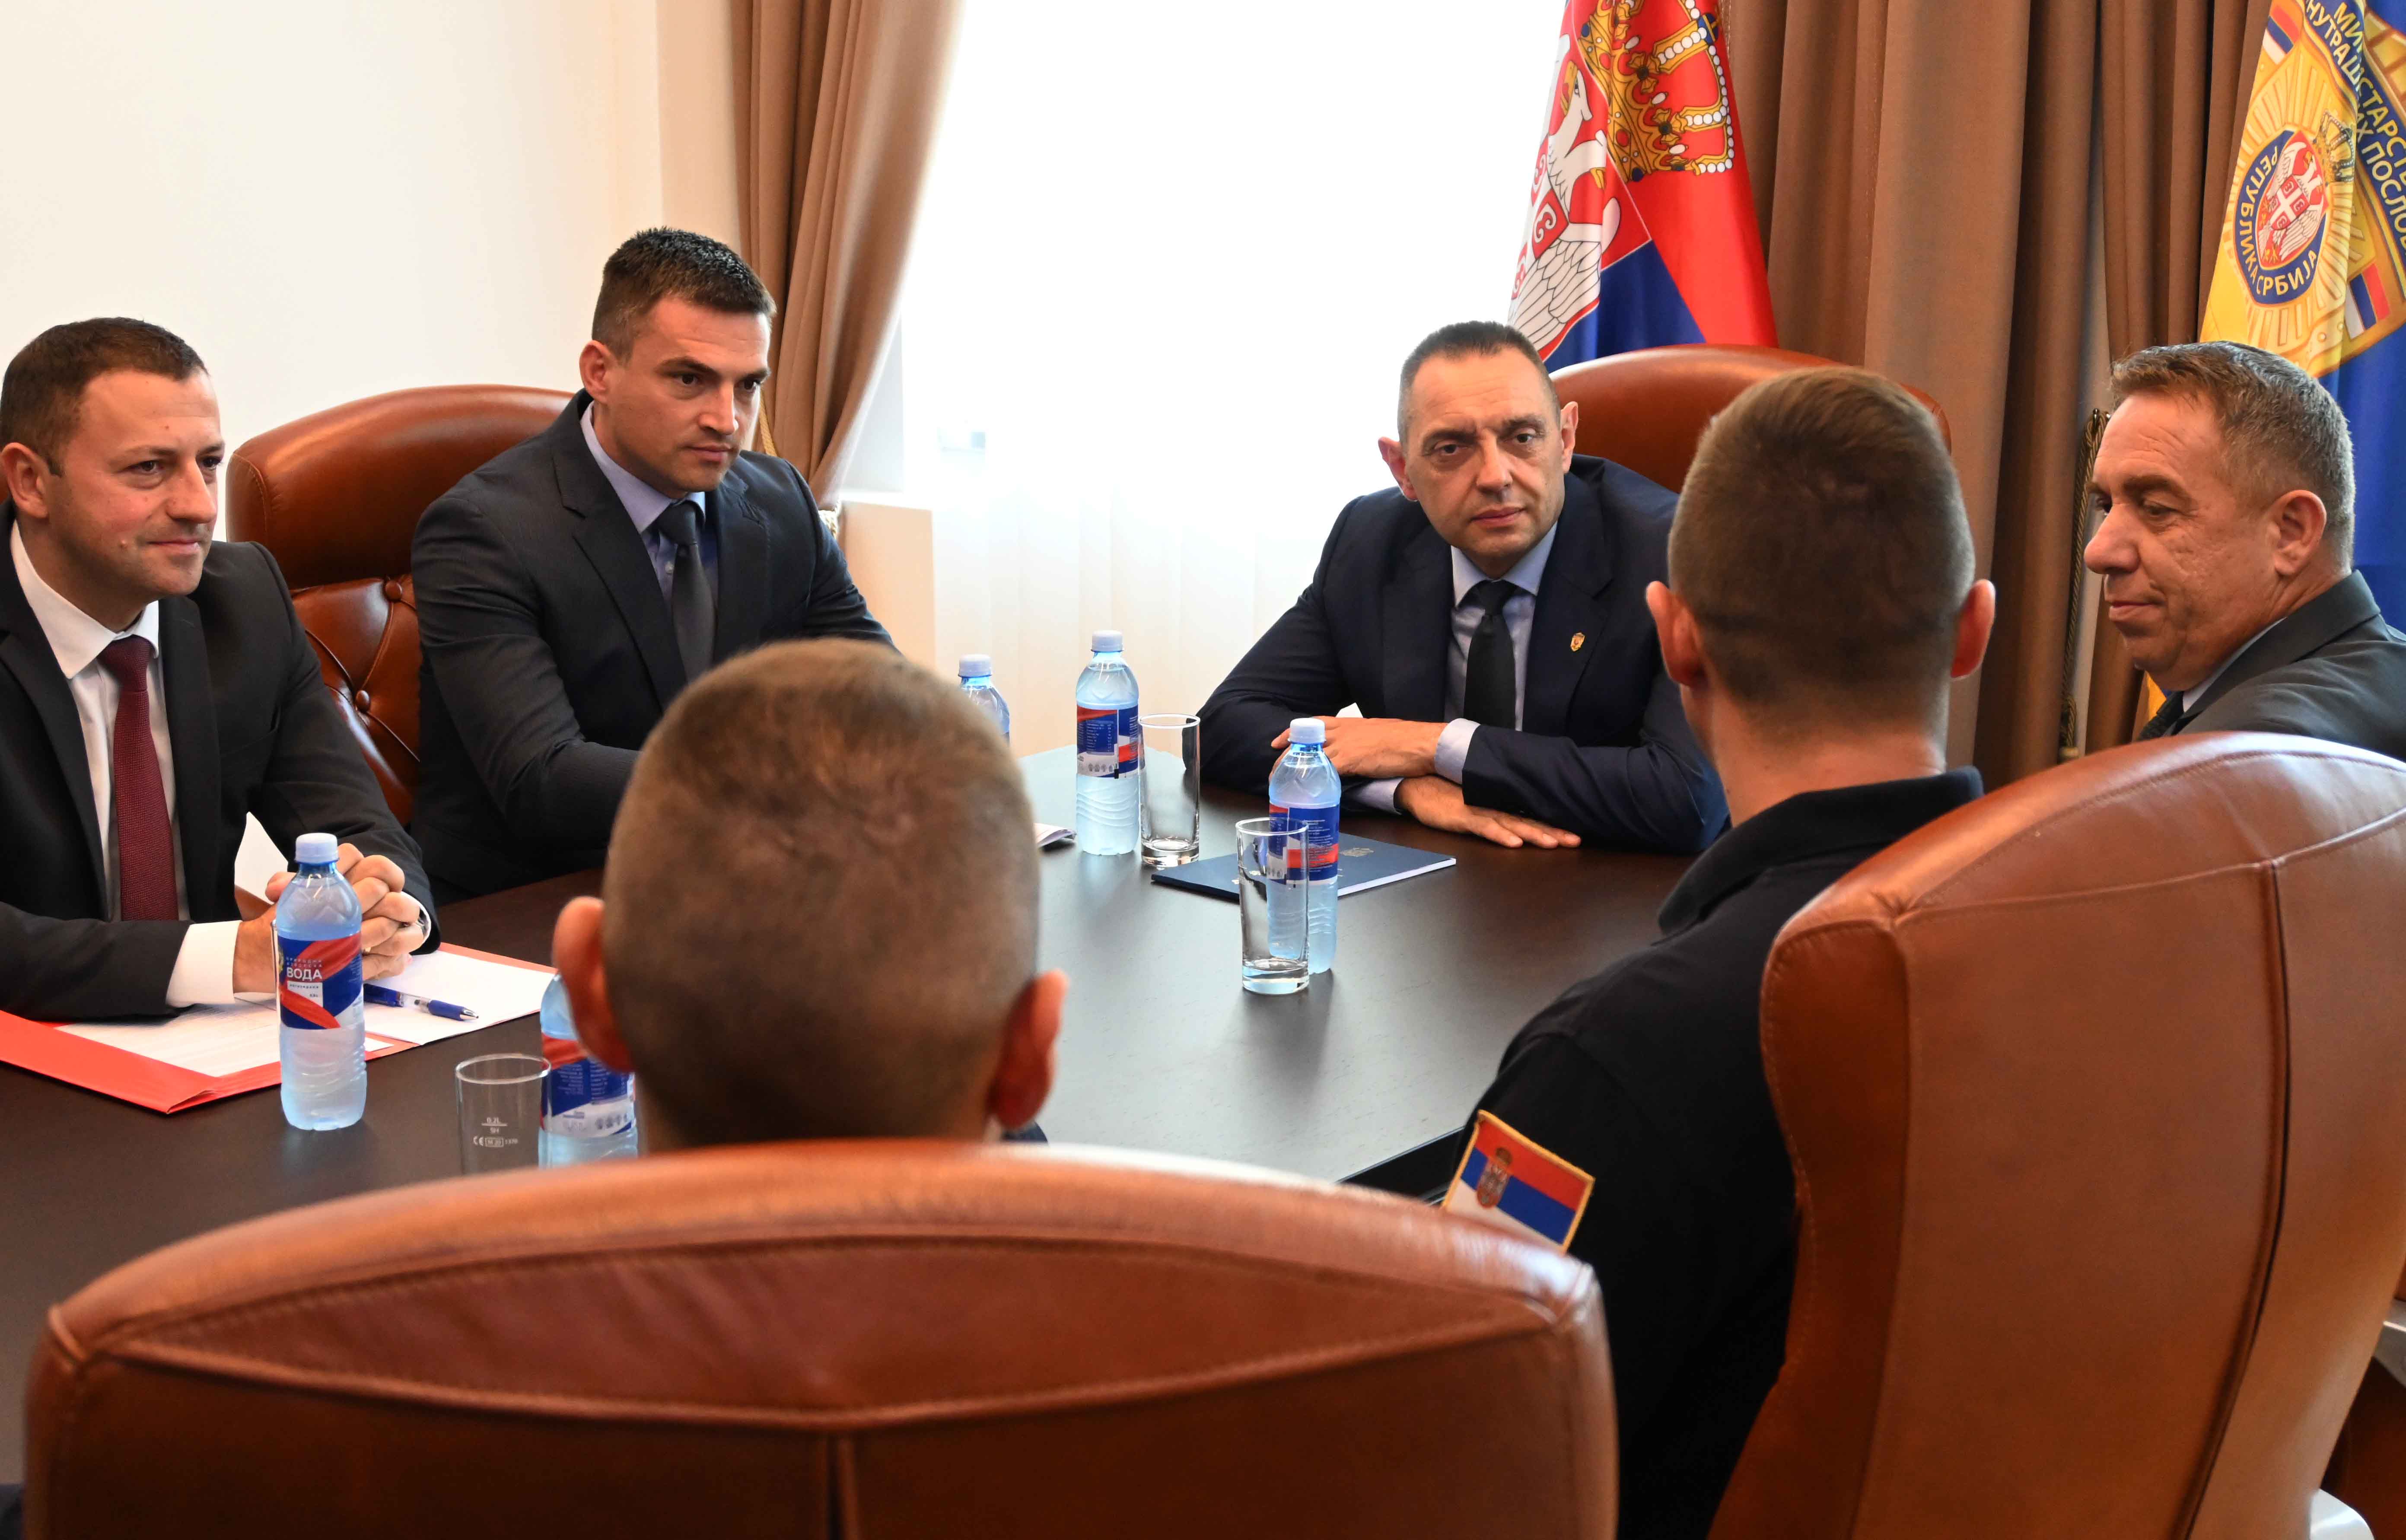 Ministar Aleksandar Vulin pohvalio je pripadnike Vatrogasno-spasilačke čete u Zaječaru, poručivši im da su oni istinski heroji